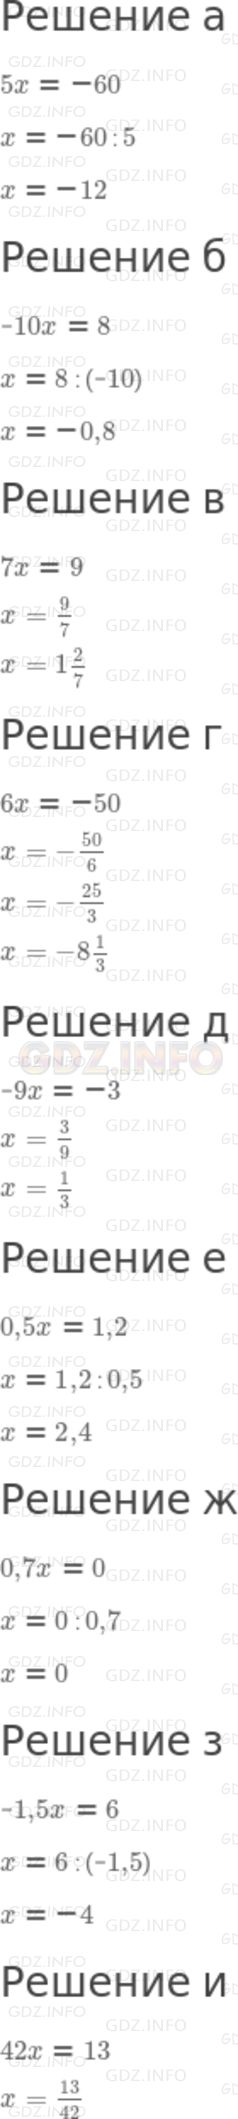 Фото решения 6: Номер задания №126 из ГДЗ по Алгебре 7 класс: Макарычев Ю.Н. г.